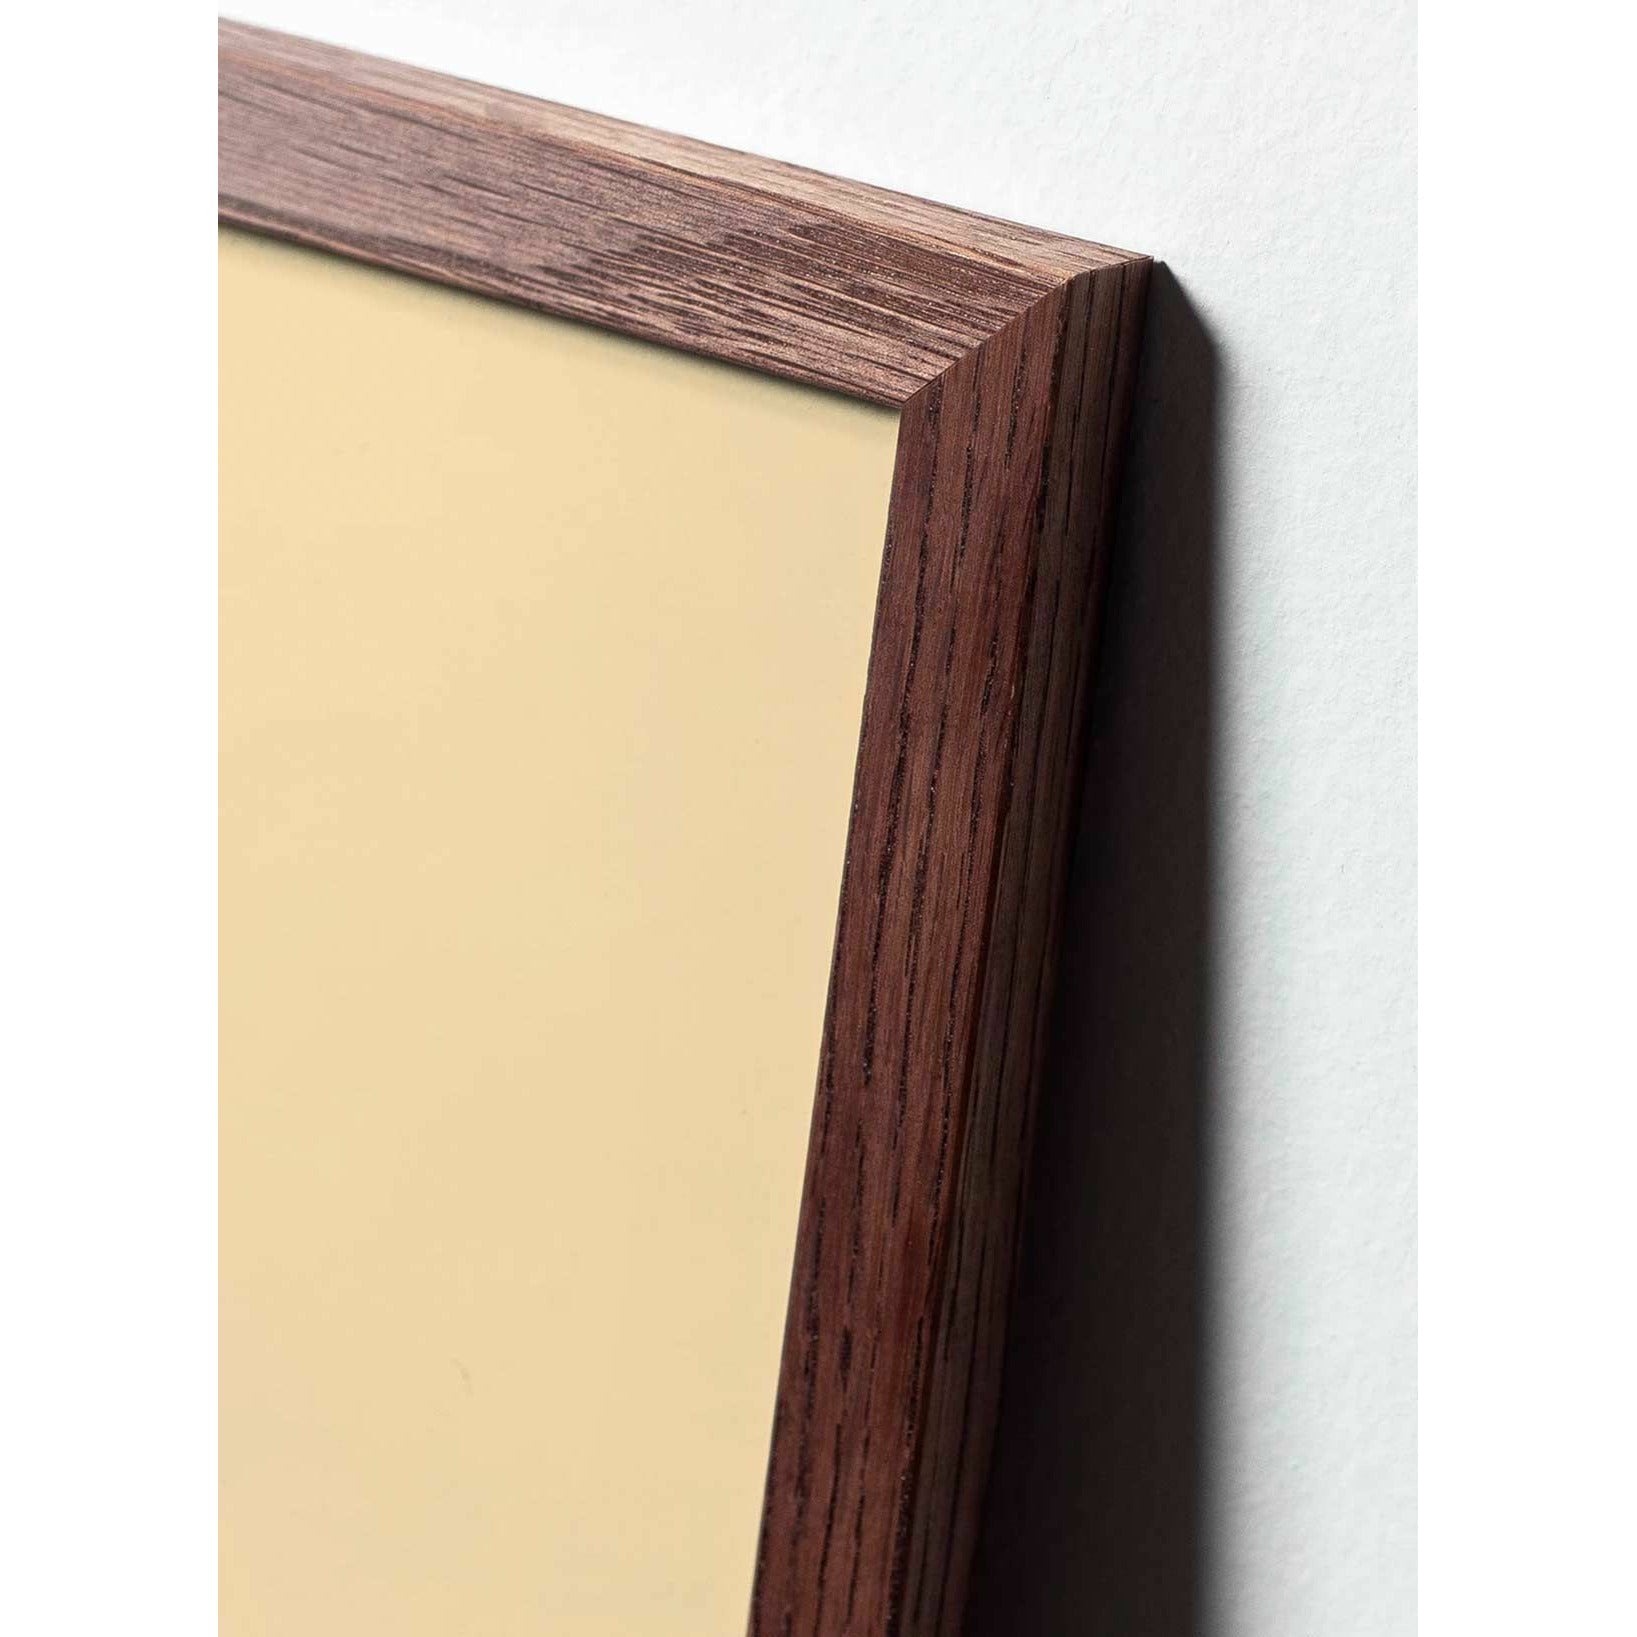 brainchild Ant Classic juliste, kehys, joka on valmistettu tummasta puusta 50x70 cm, vaaleanpunainen tausta